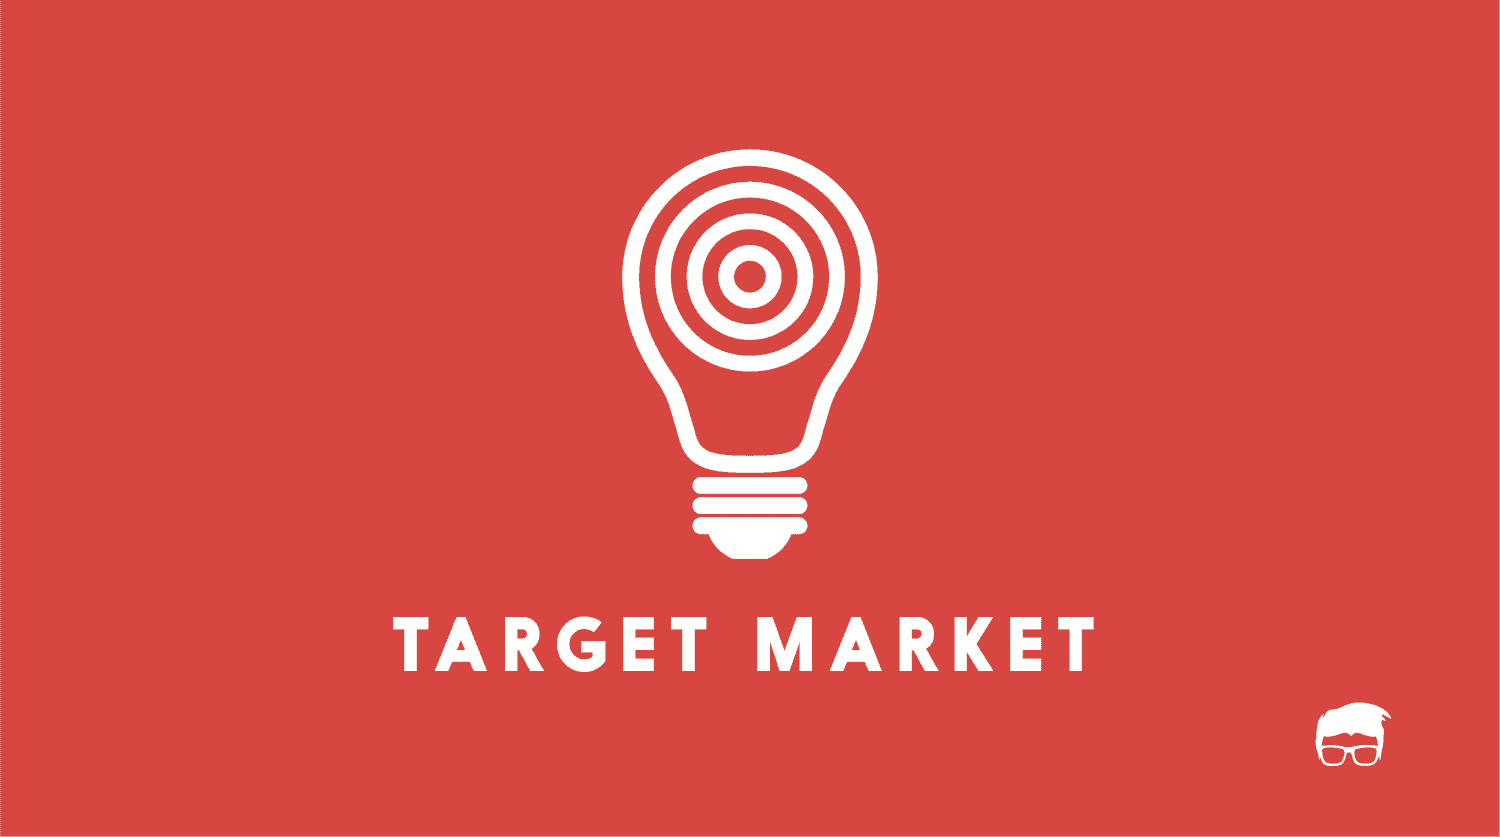 target market analysis